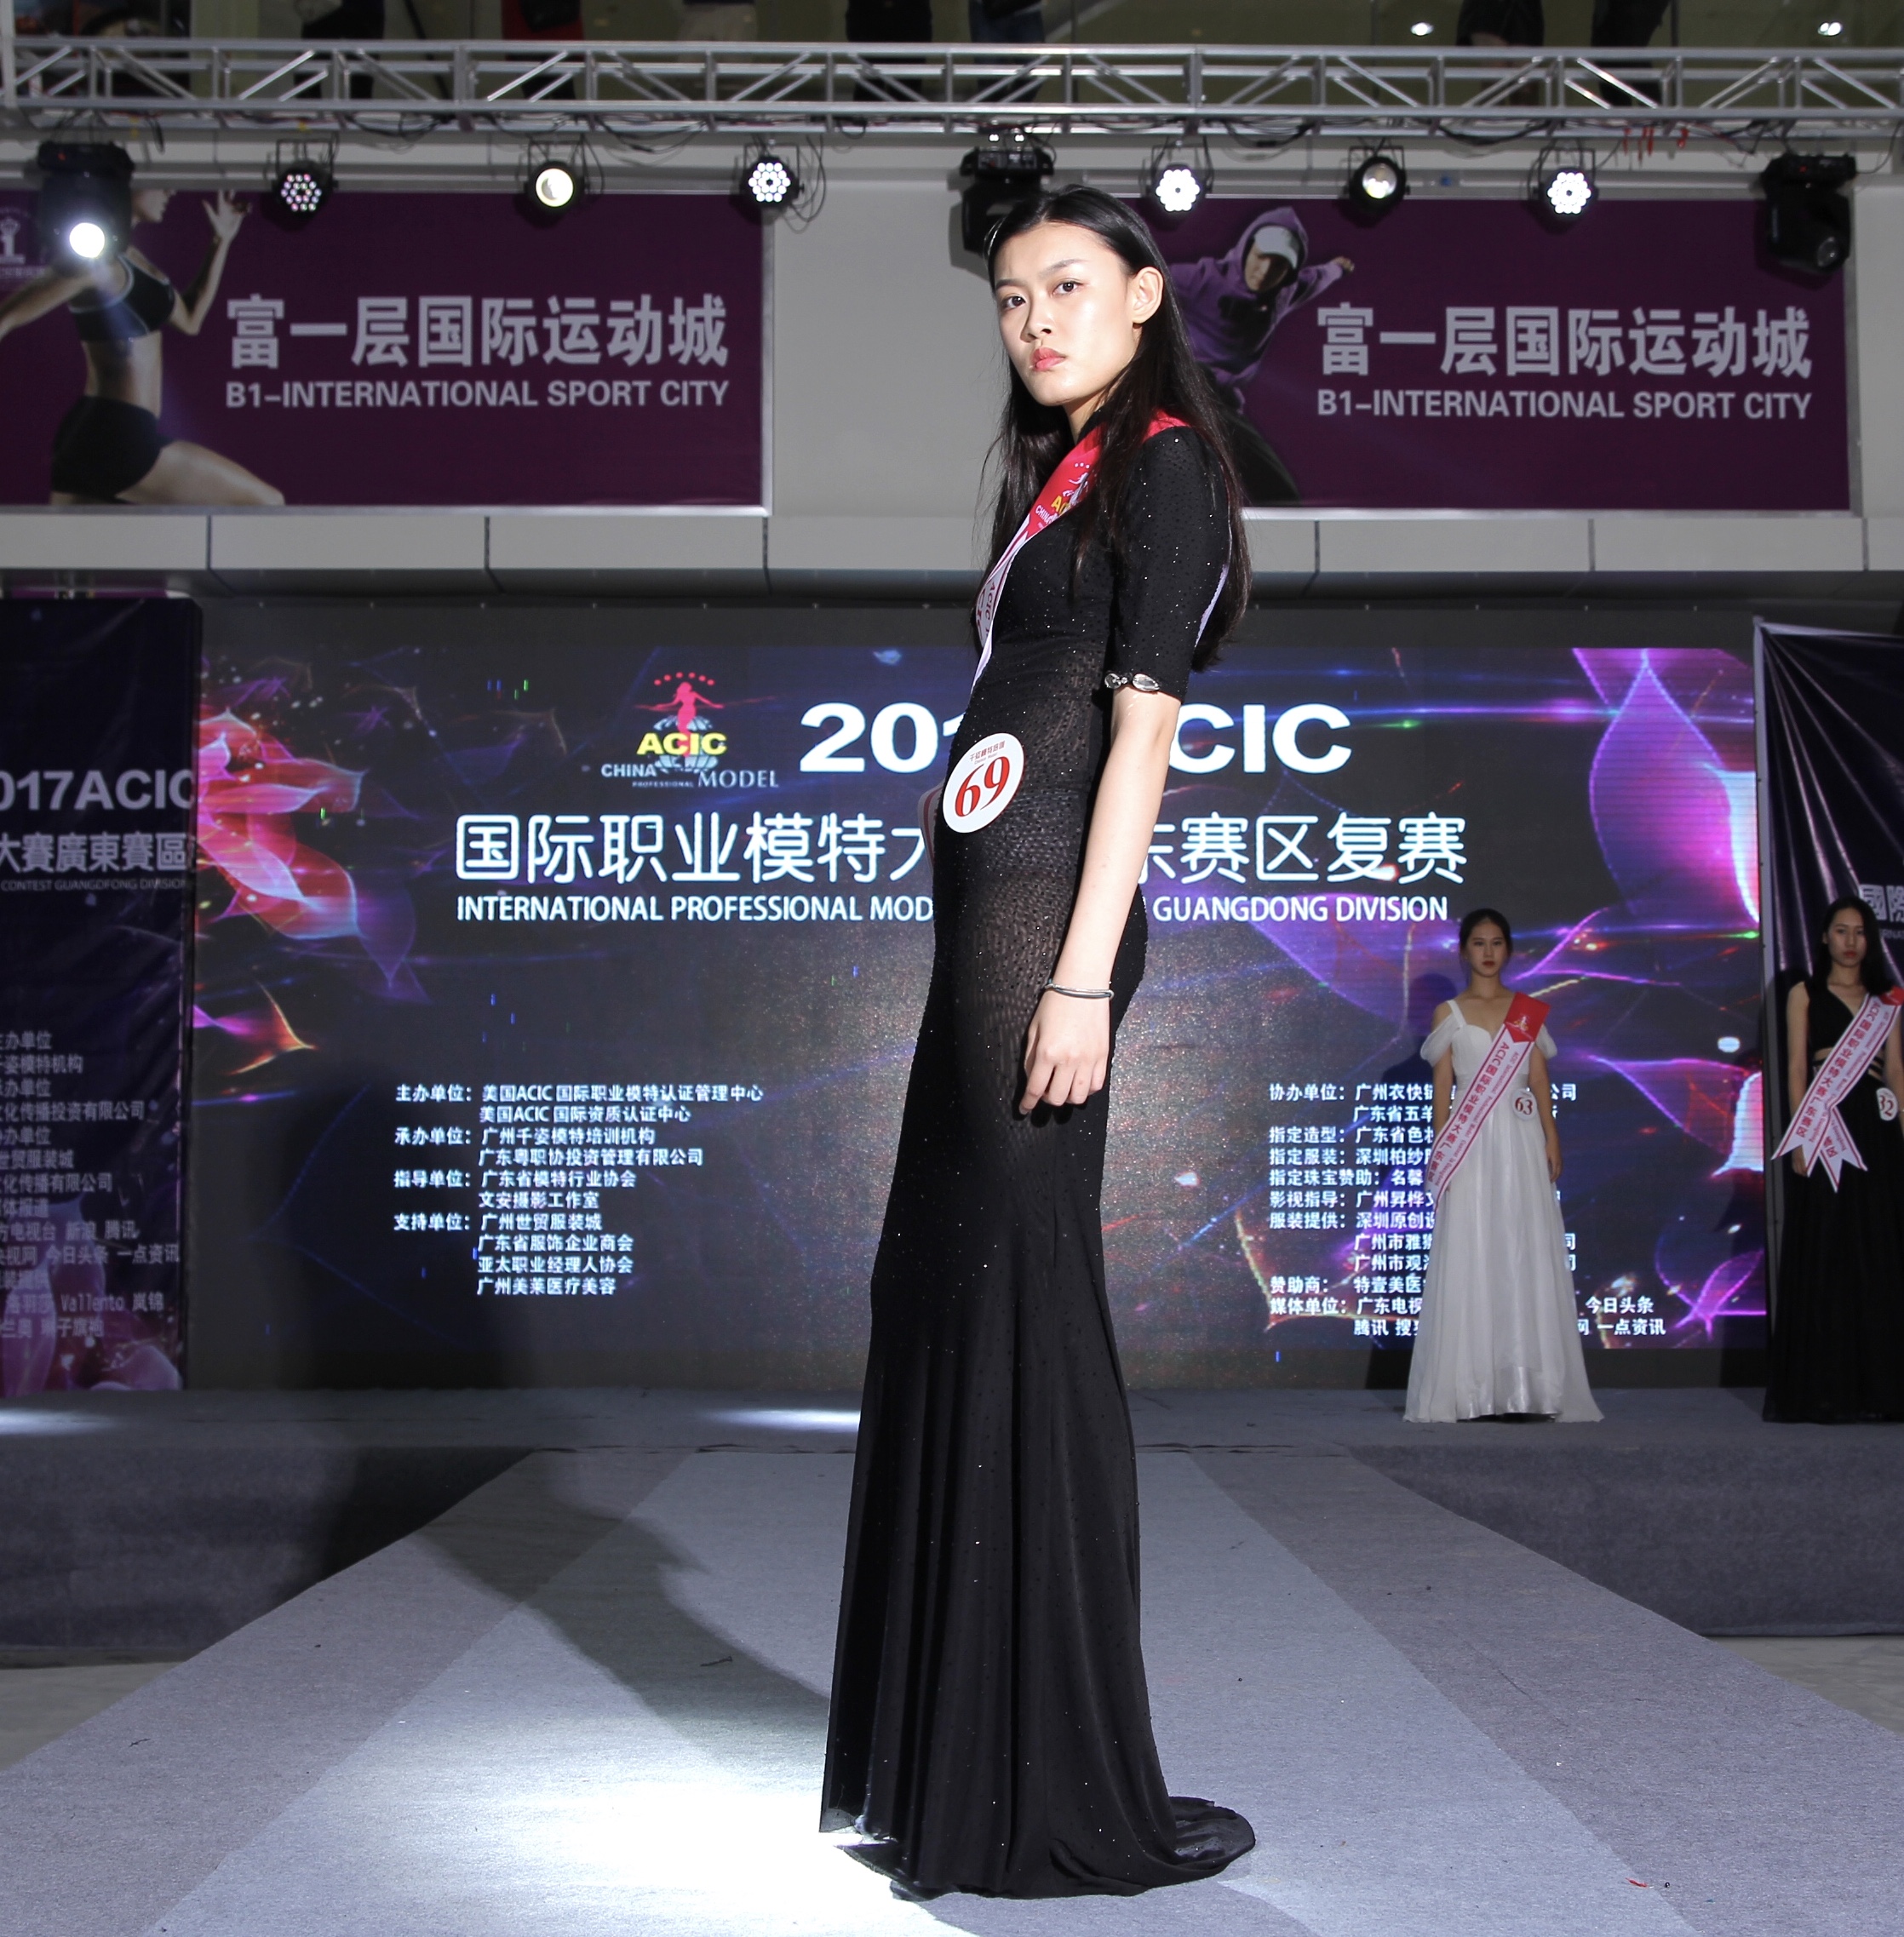 acic国际职业模特大赛广东赛区选手风采